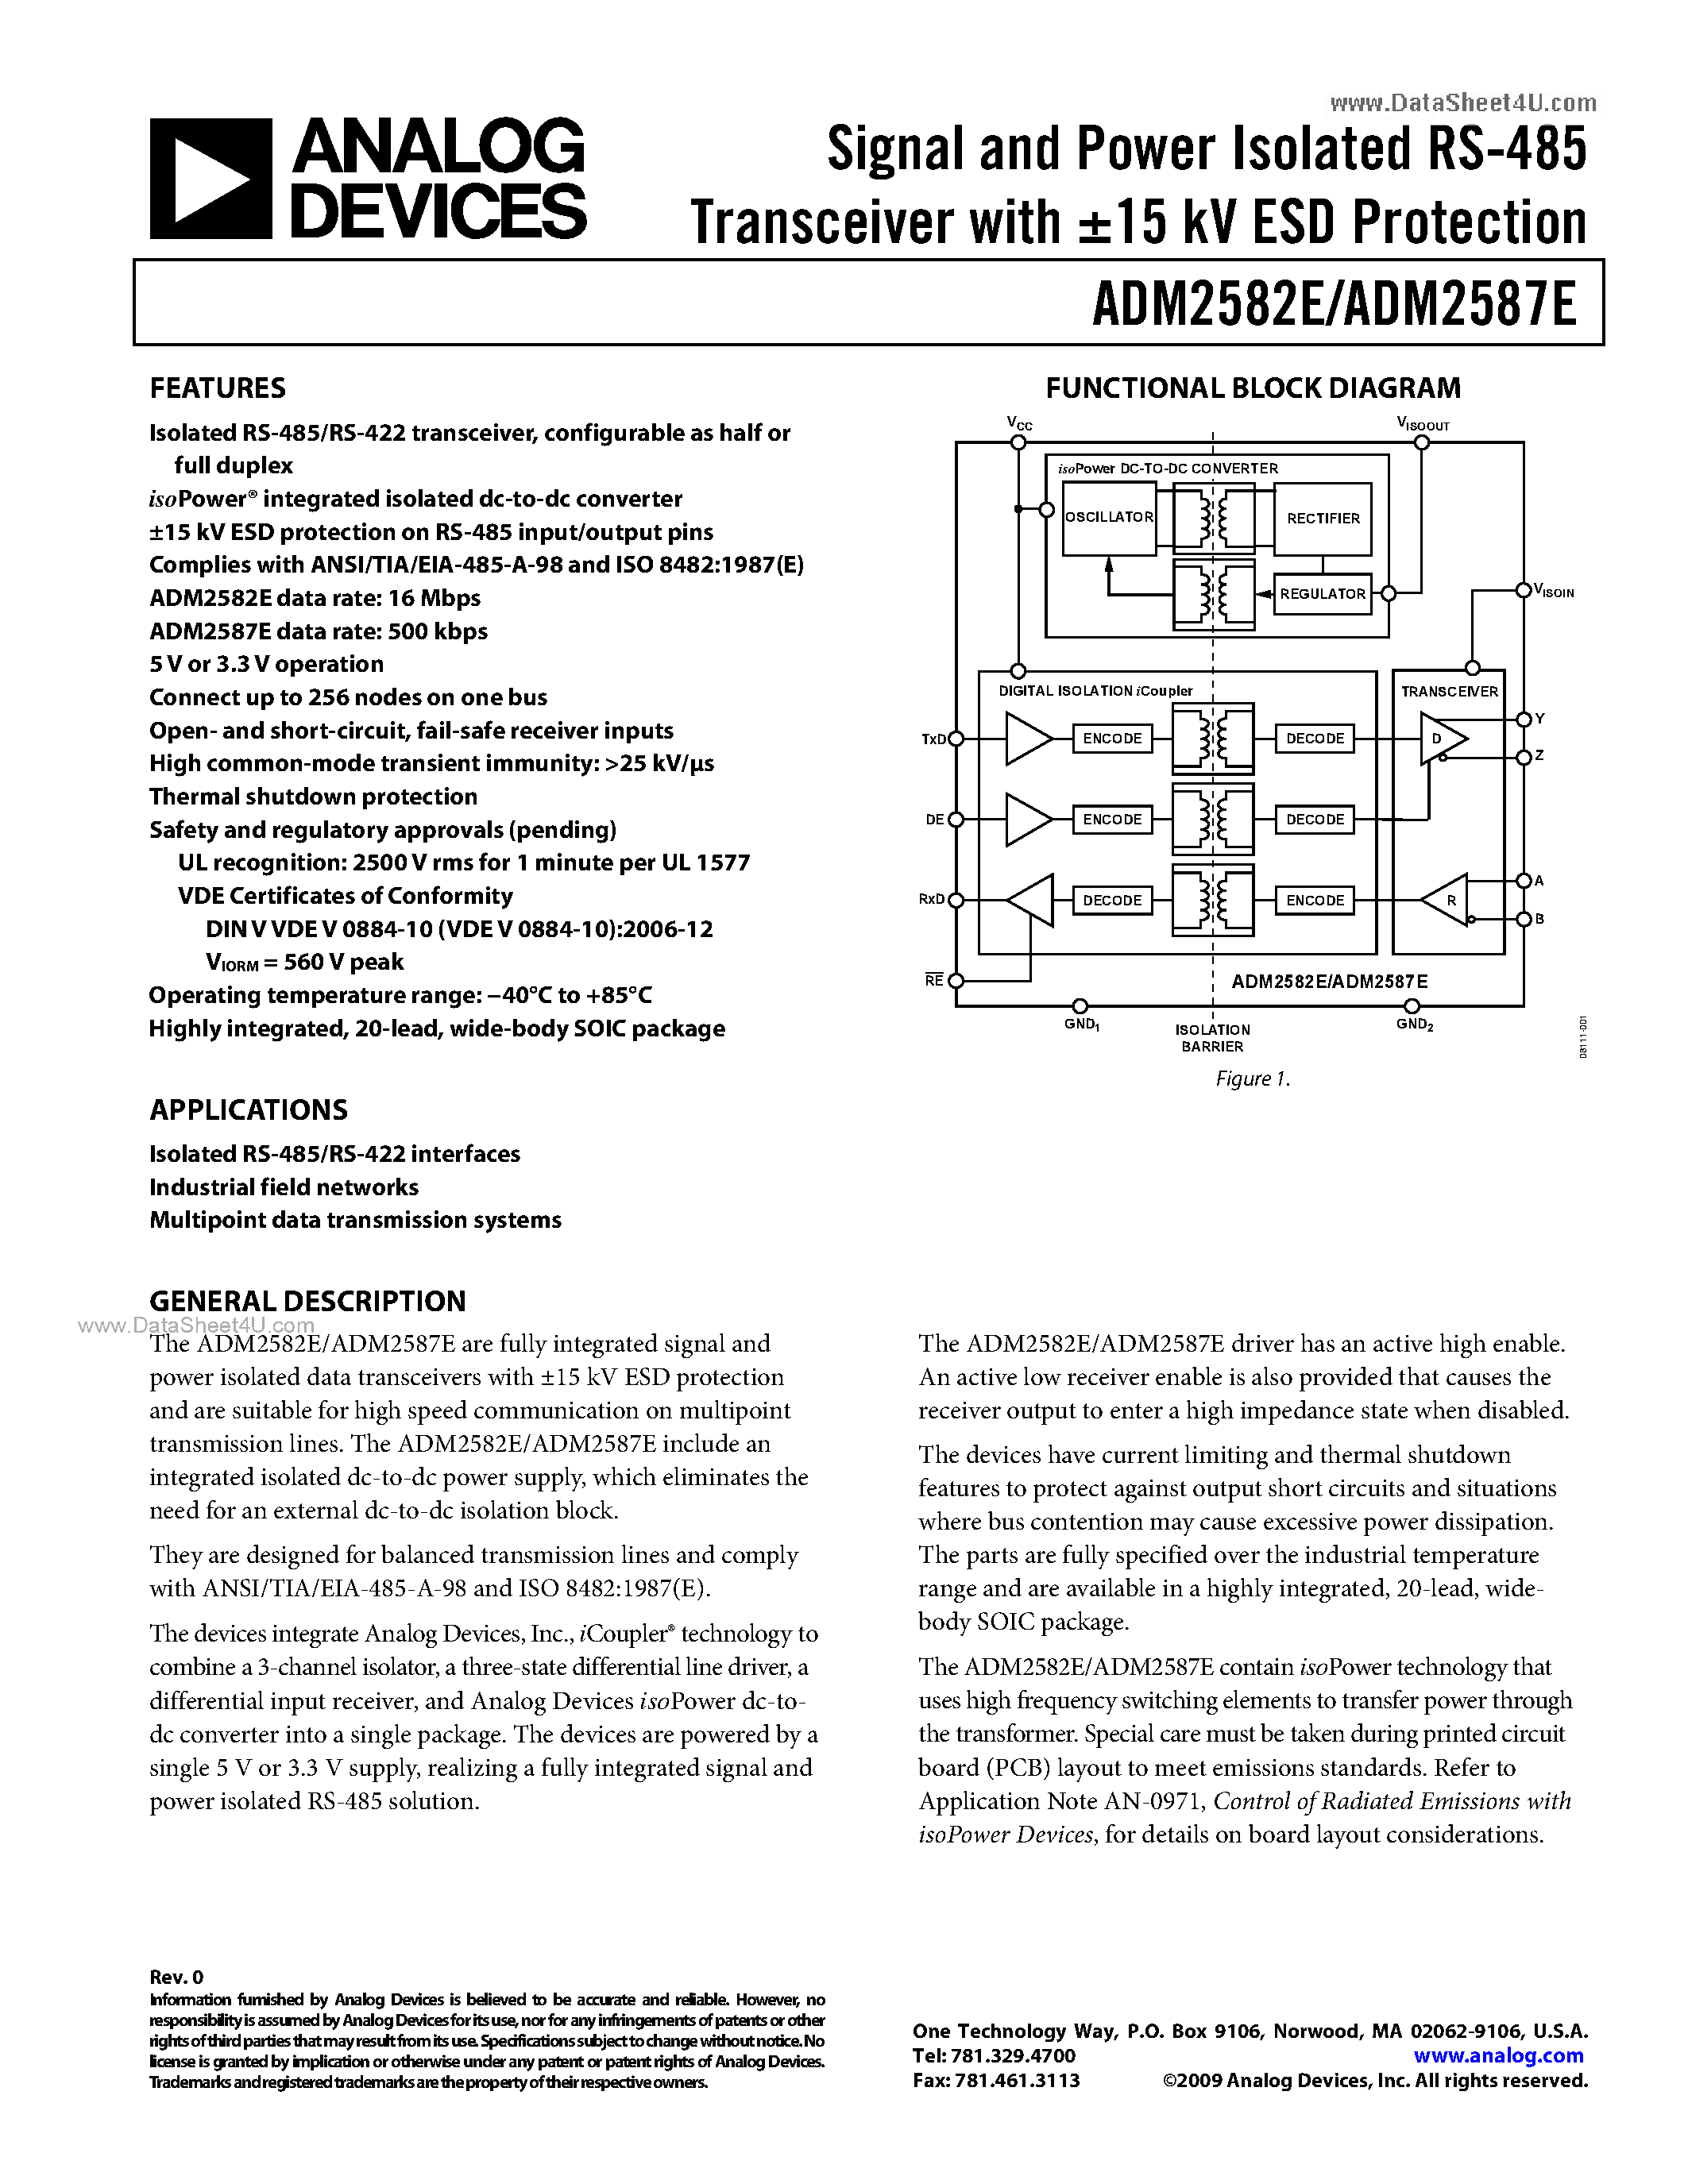 Даташит ADM2582E - (ADM2582E / ADM2587E) Signal and Power Isolated RS-485 Transceiver страница 1